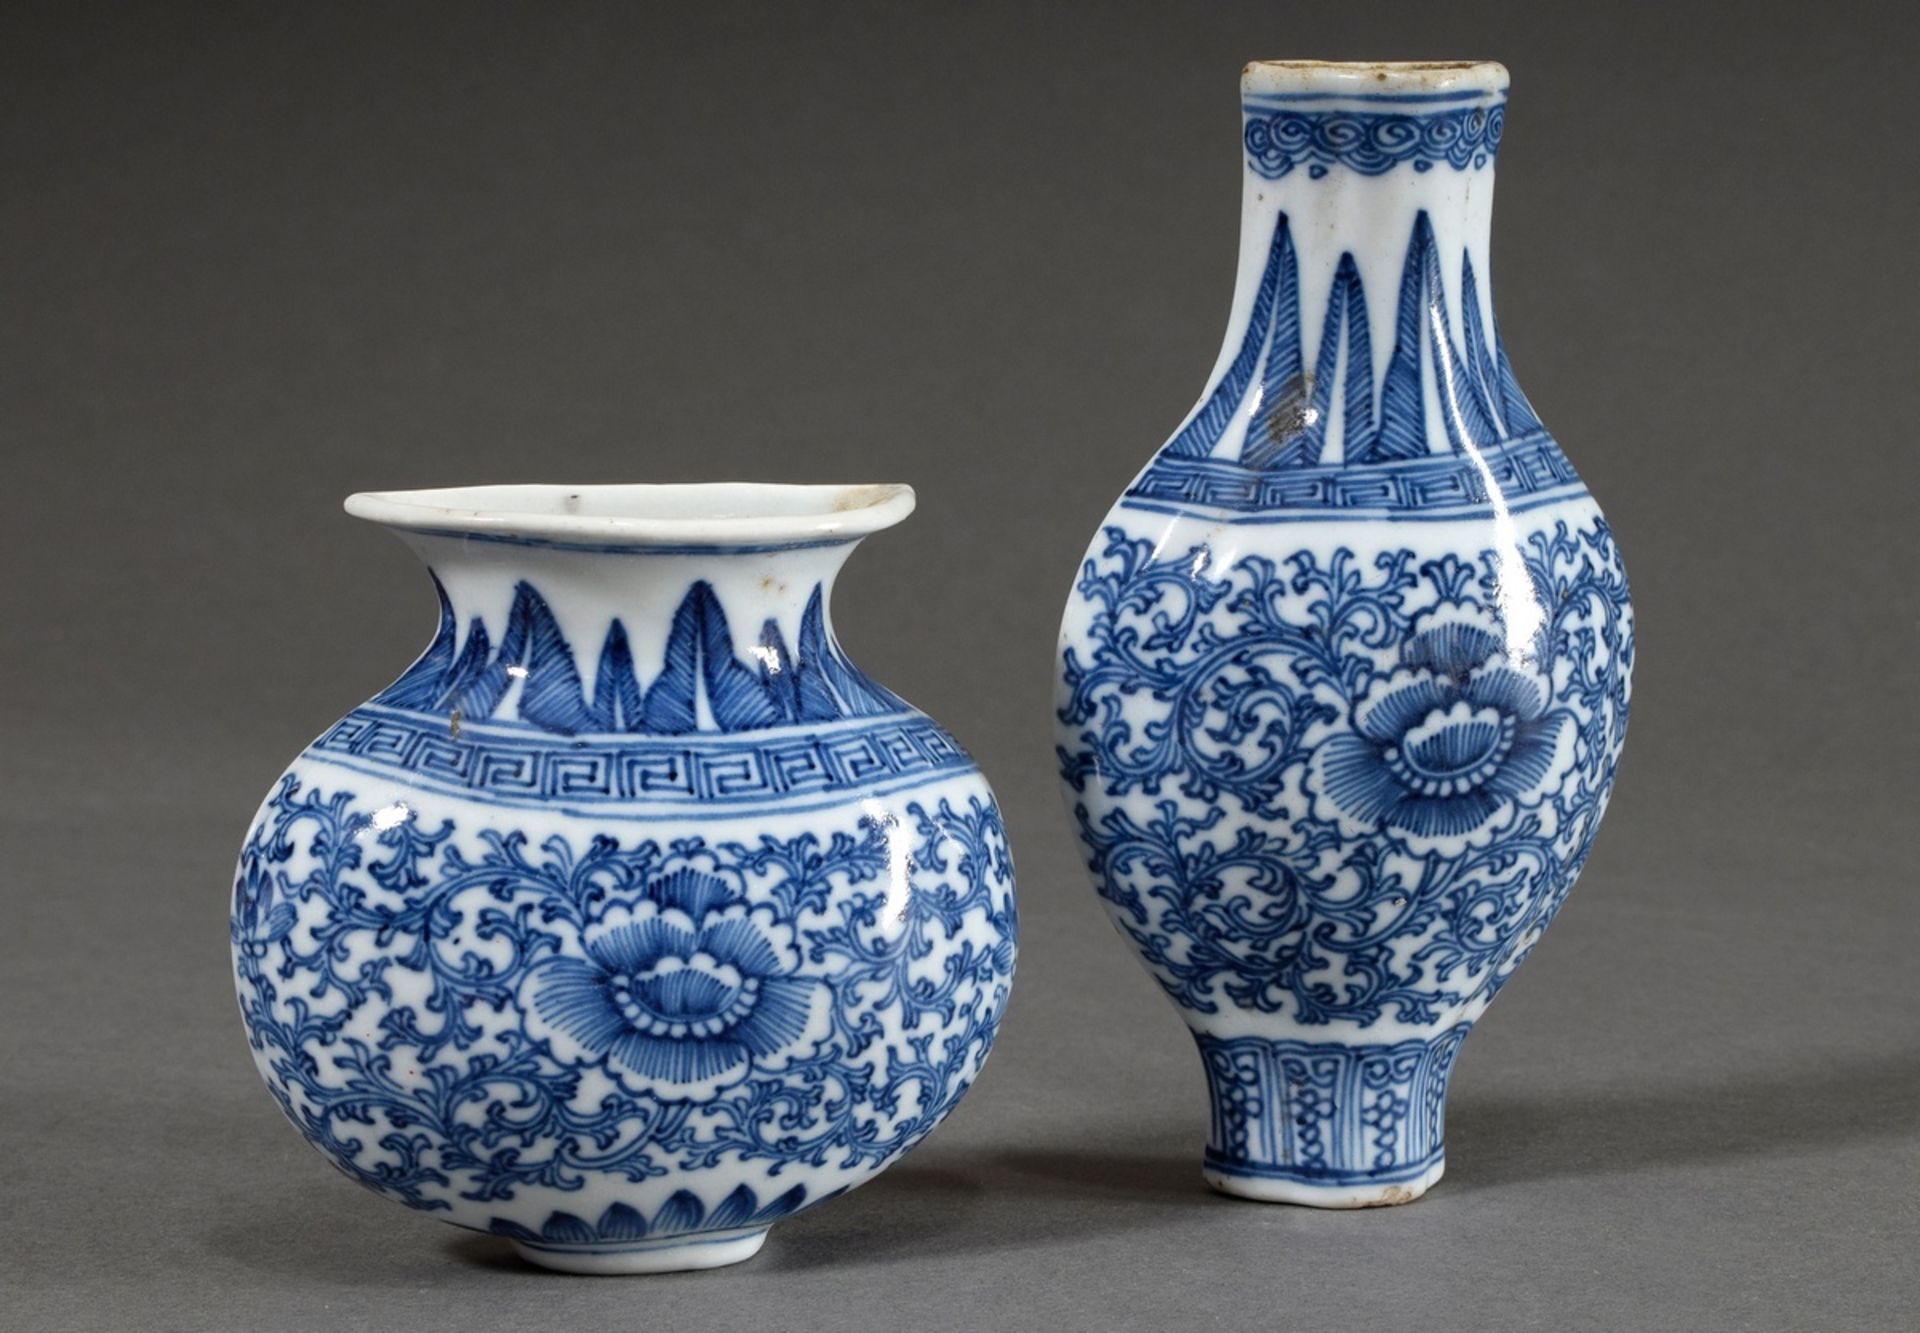 2 Diverse chinesische Porzellan Wandvasen mit Blaumalerei Dekor "Blüten und Ranken" nach Ming Vorbi